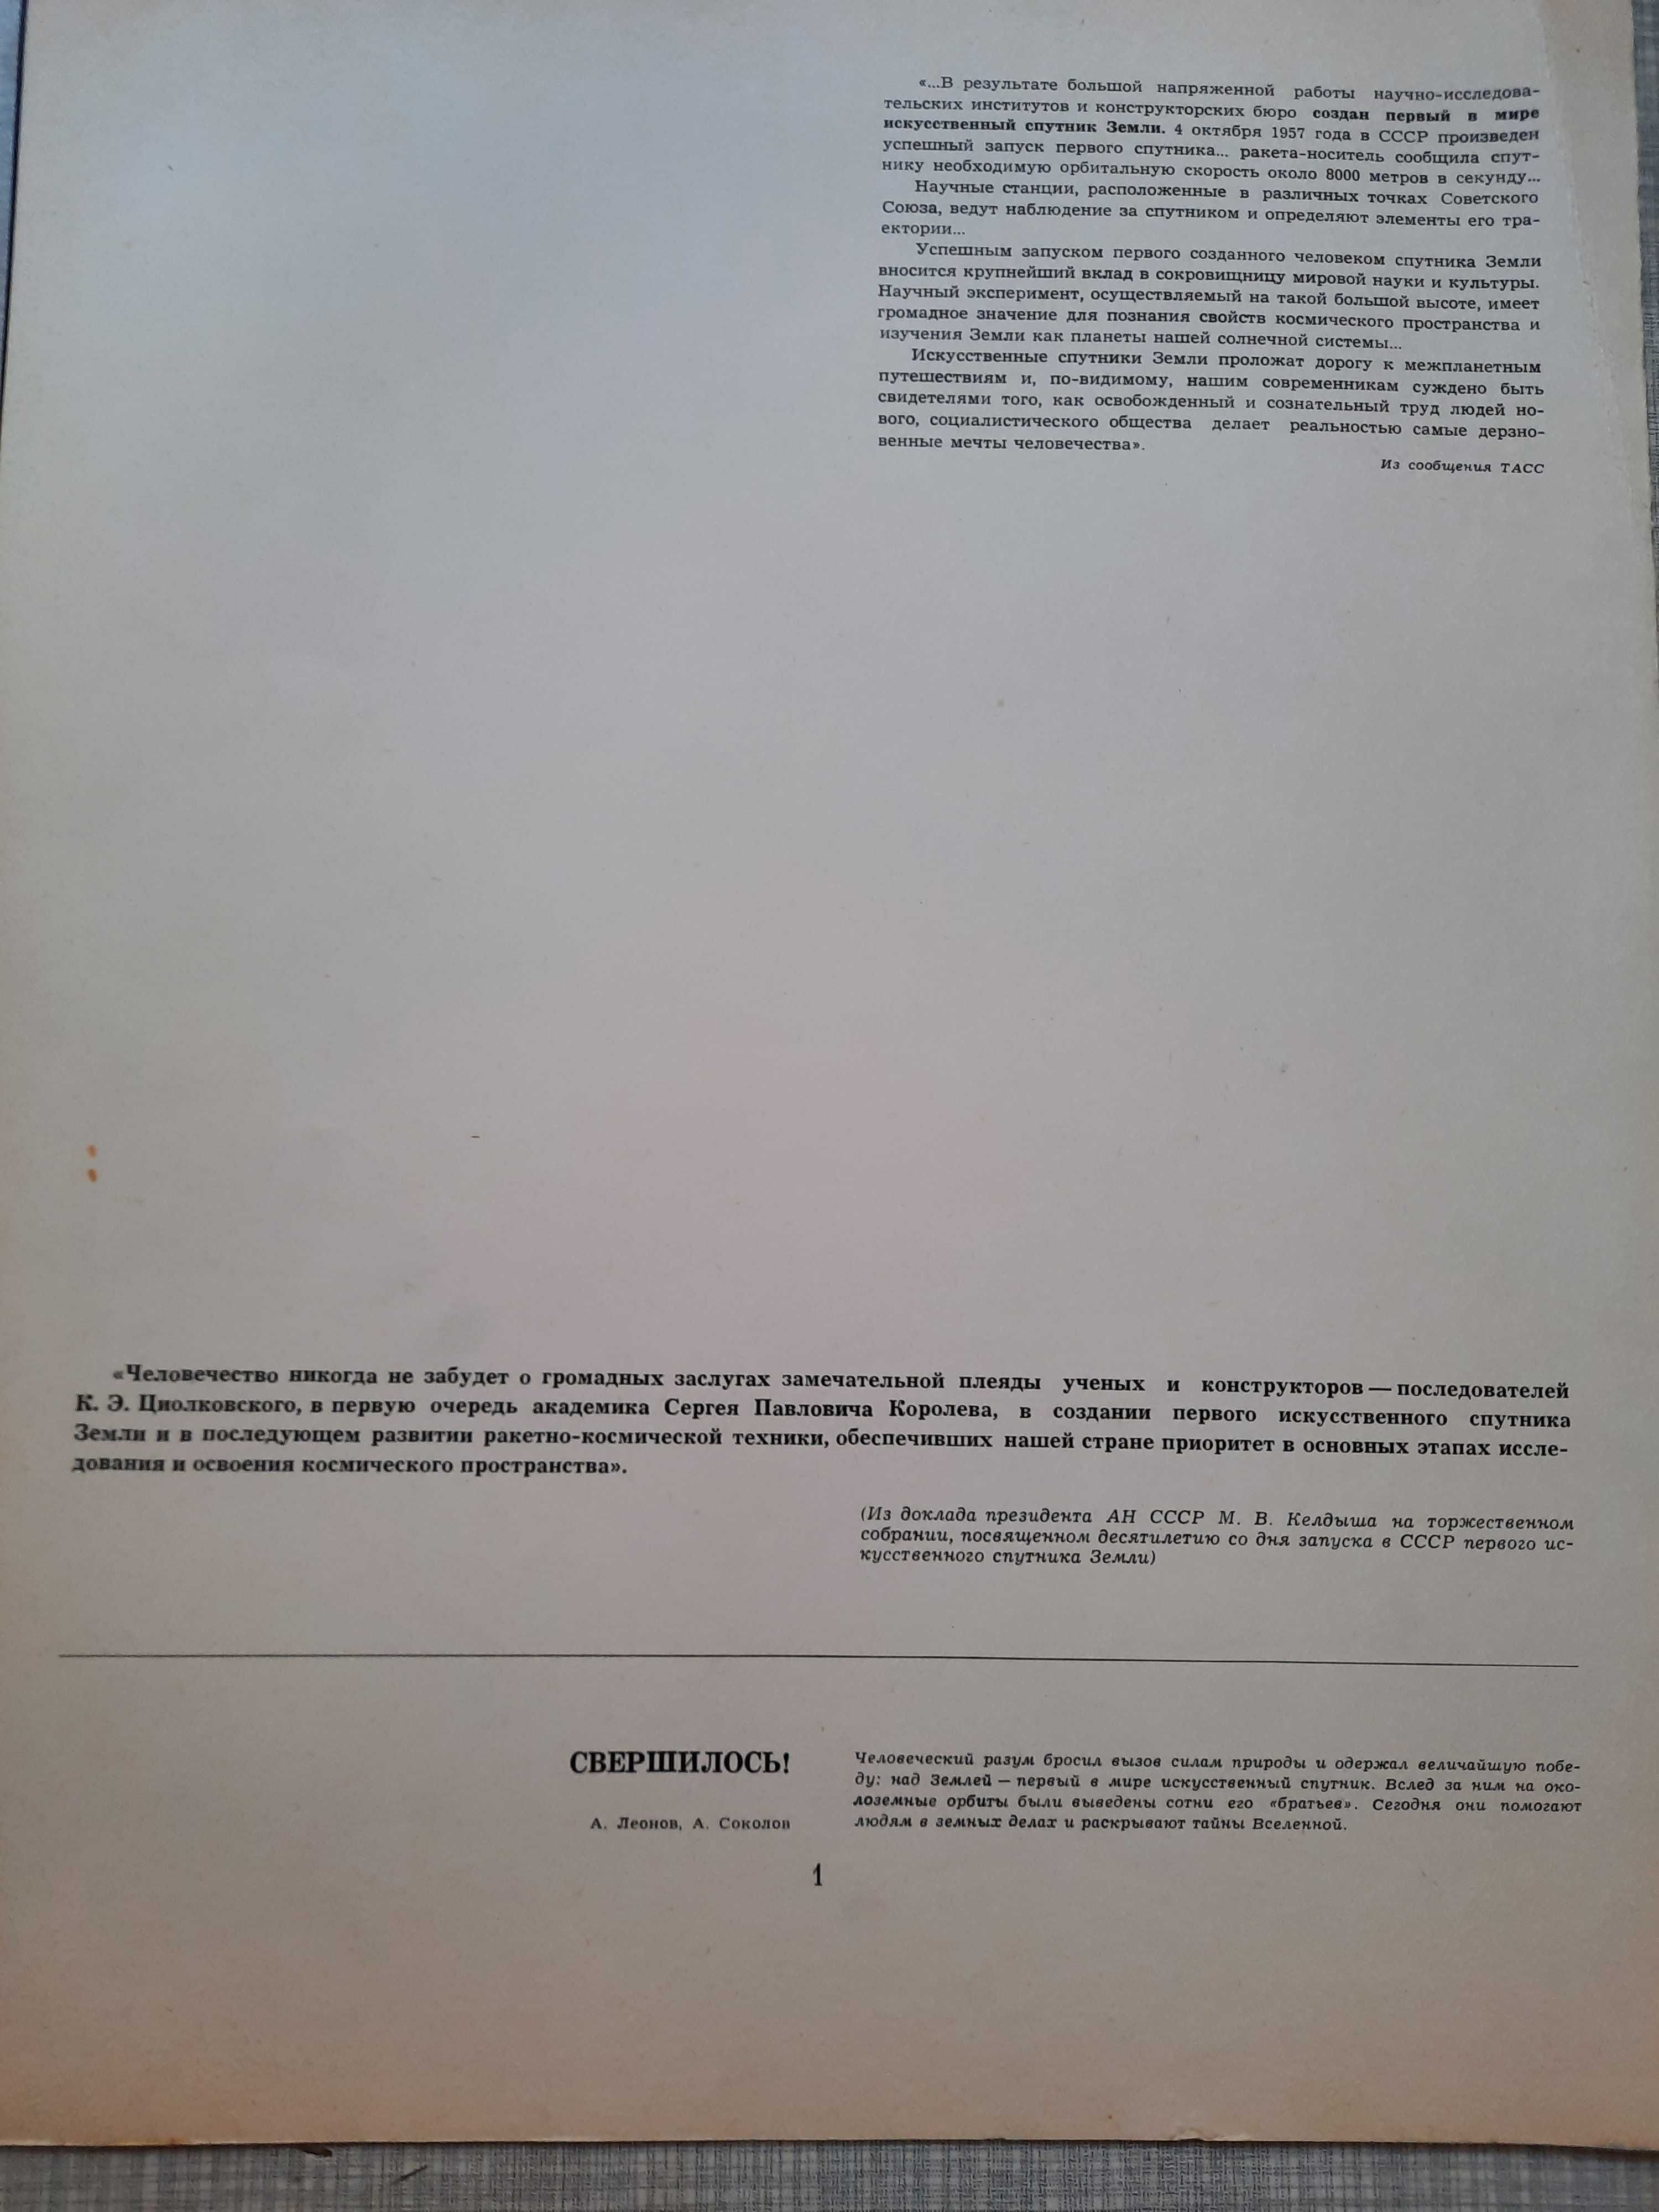 Альбом "Космические дали" Леонов. Соколов изд 1972 год тираж 10000